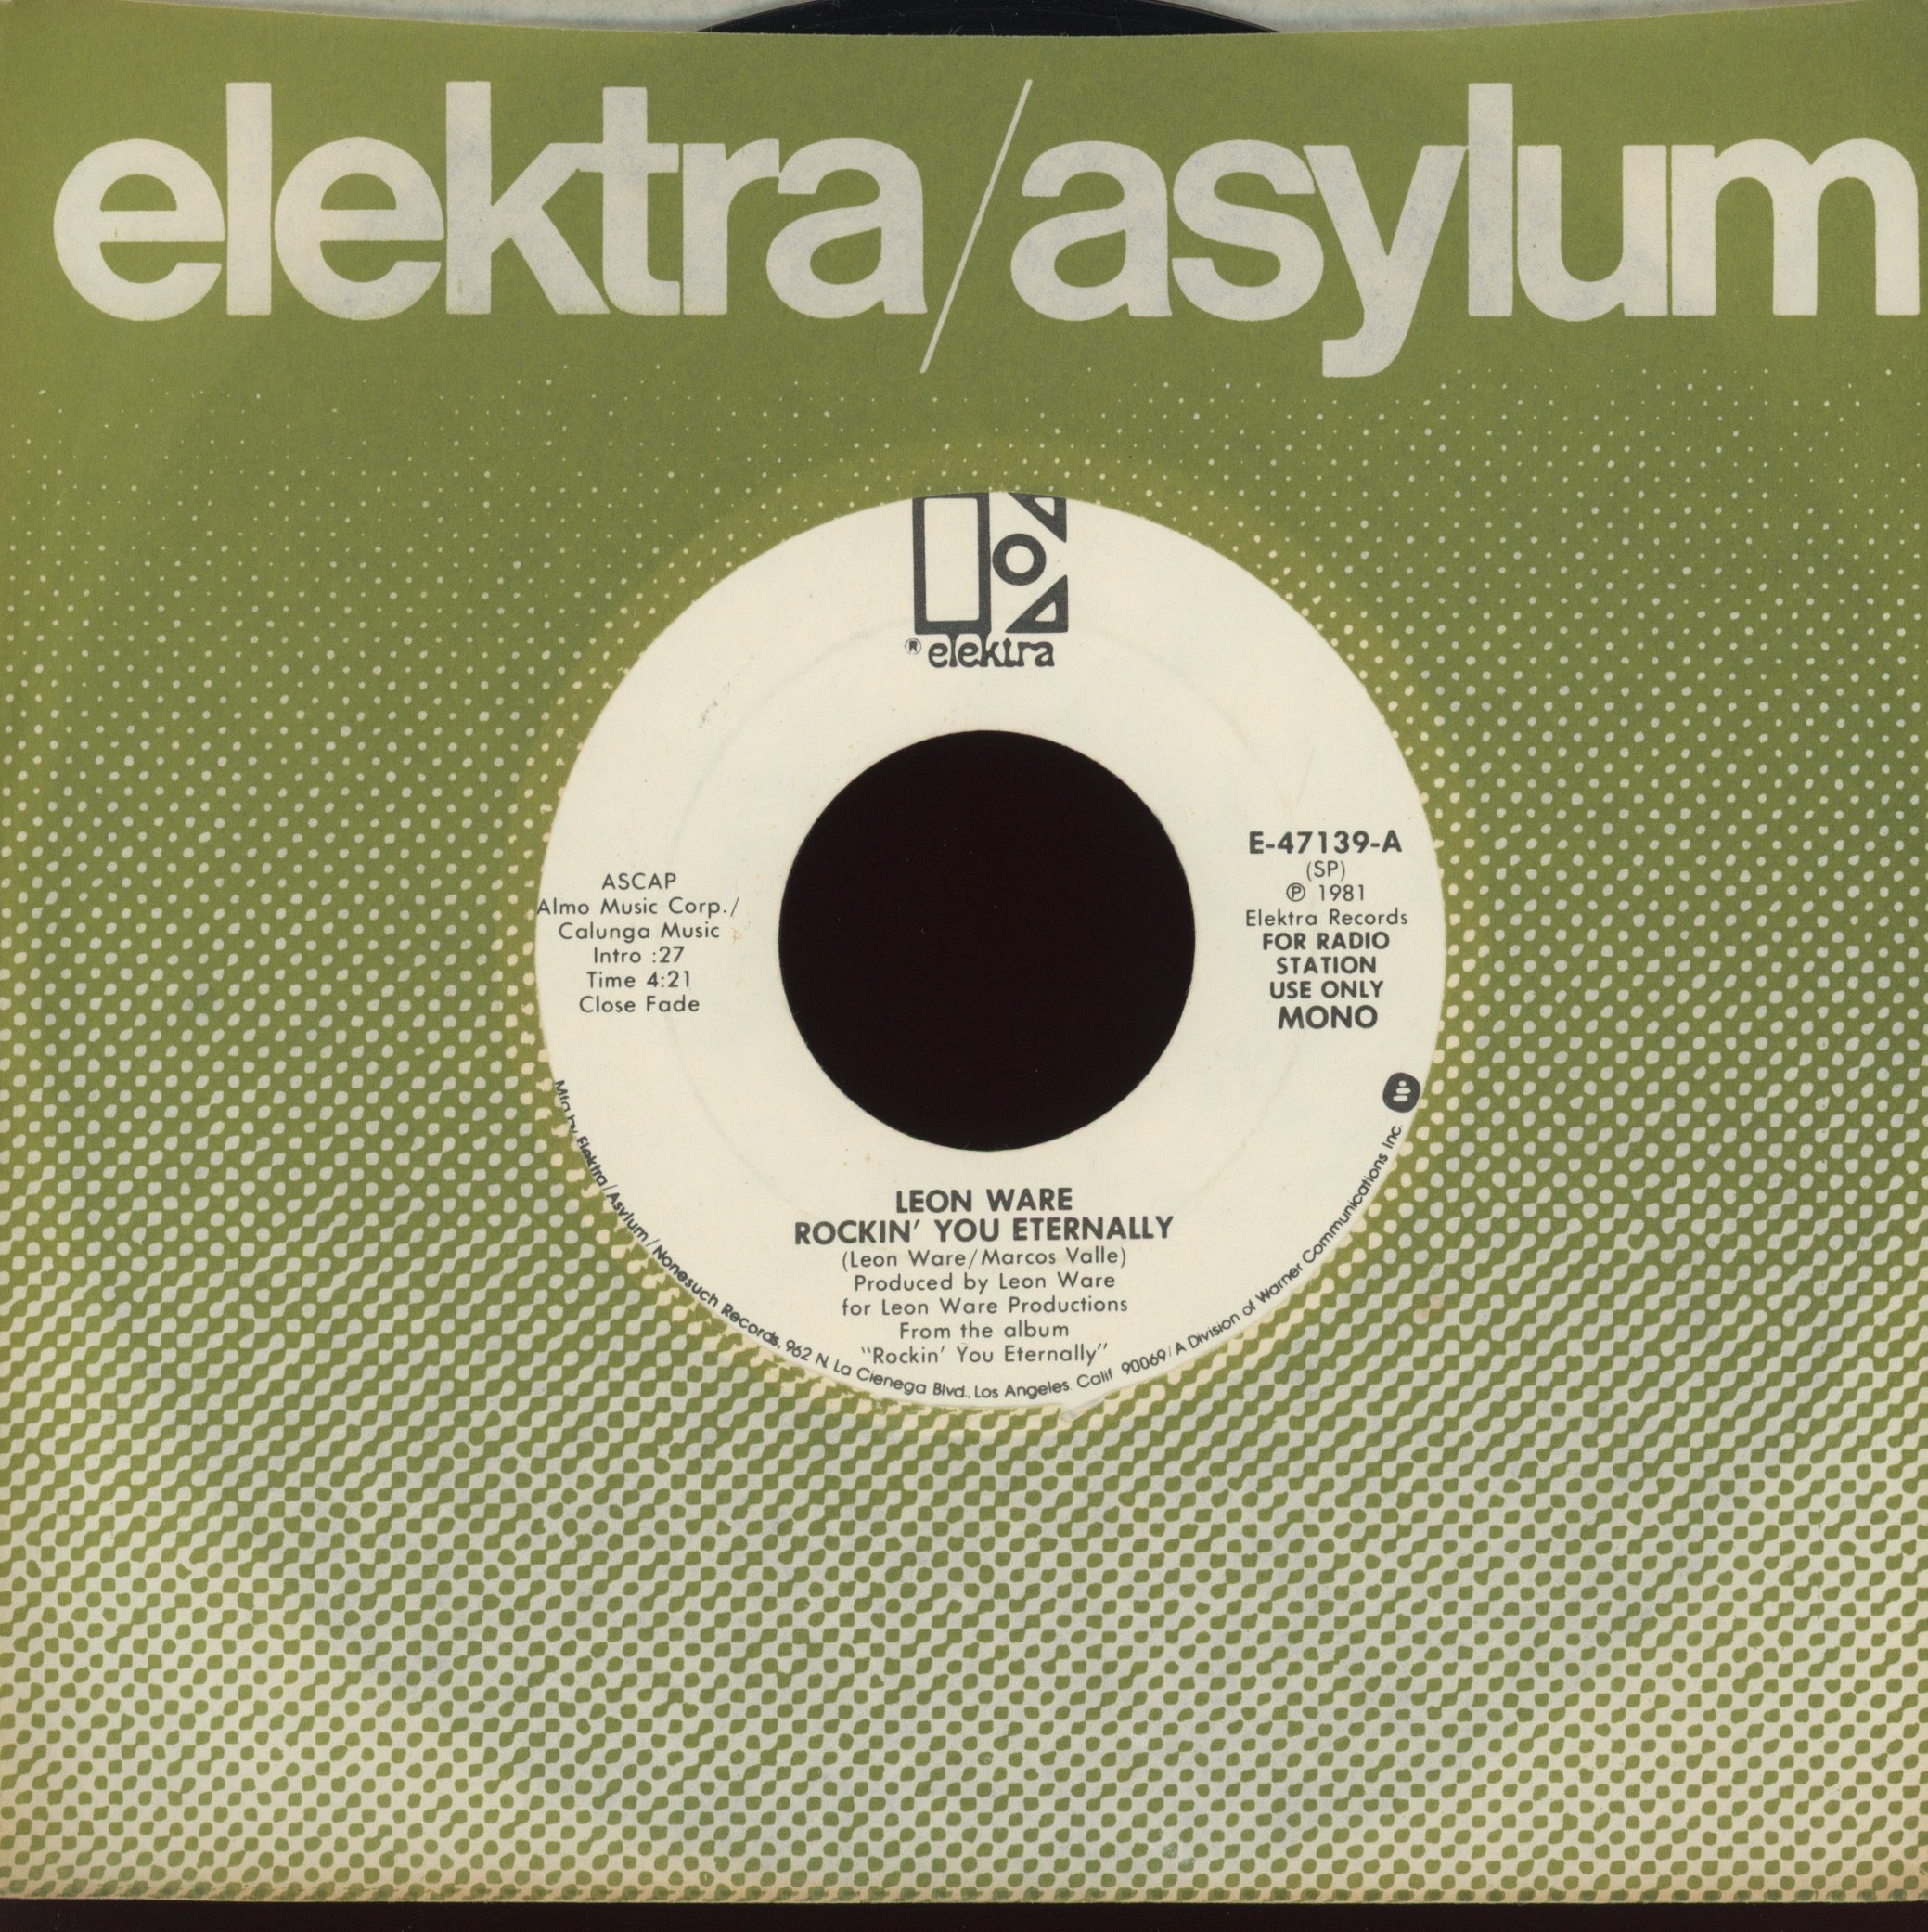 Leon Ware - Rockin' You Eternally on Elektra Promo Modern Soul 45